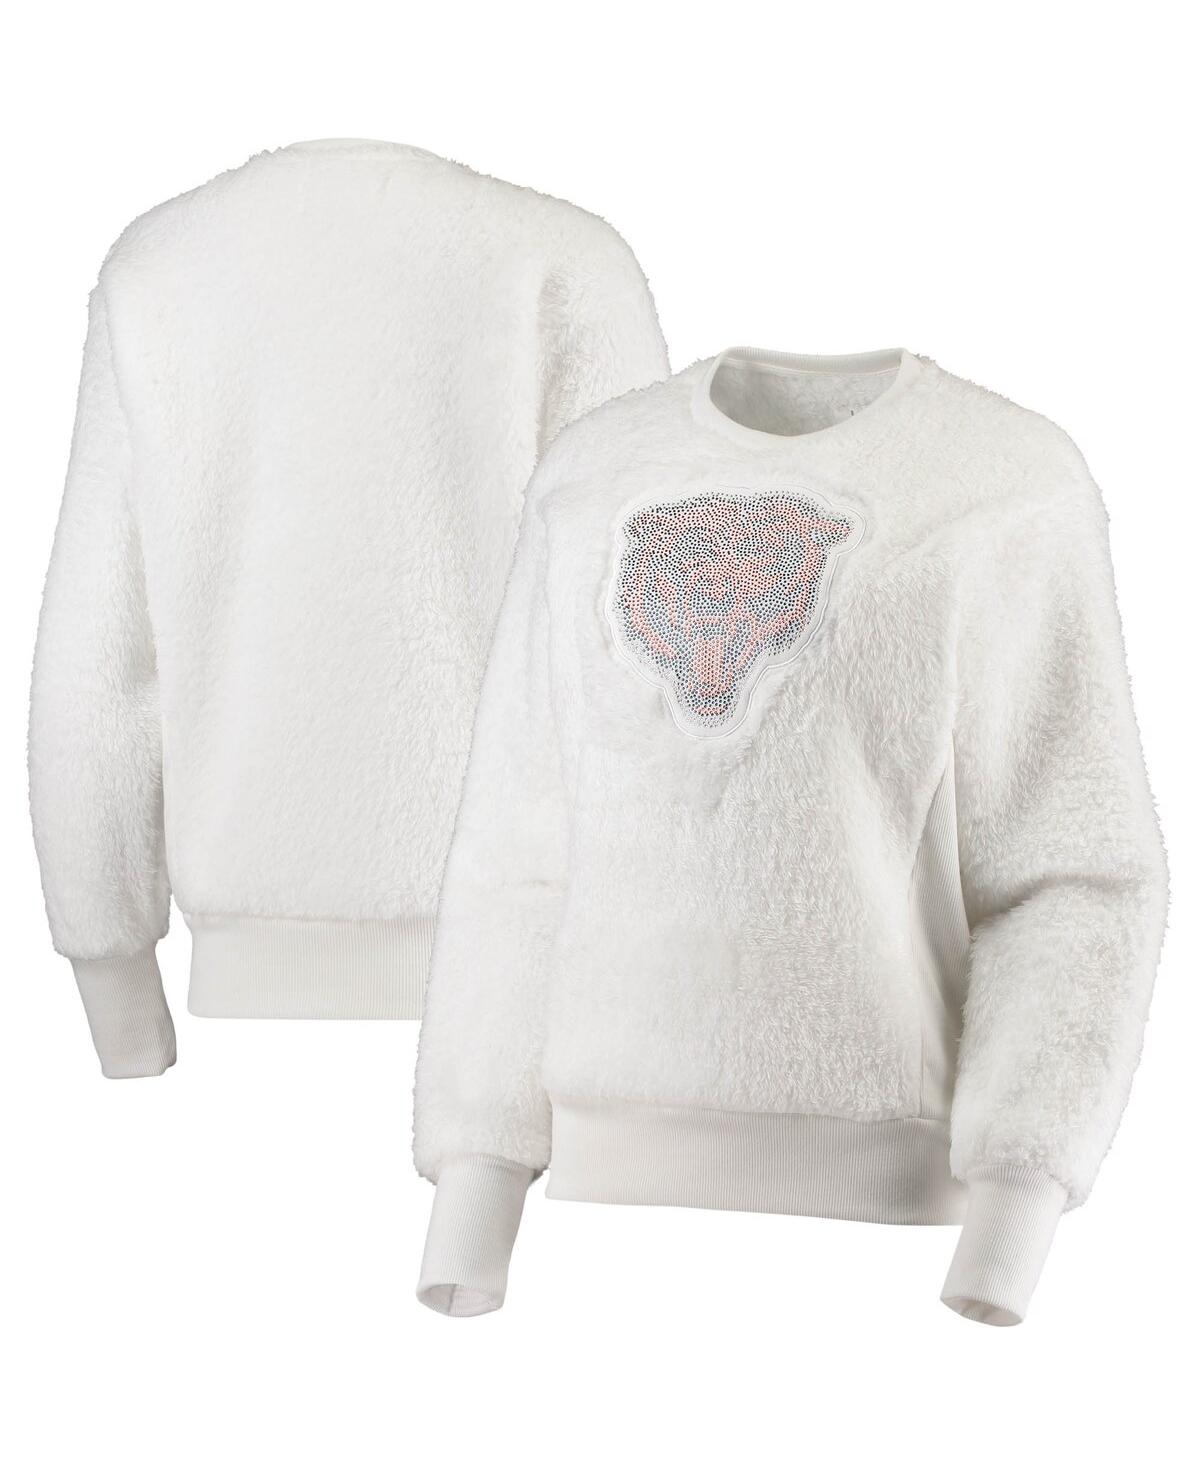 Women's White Chicago Bears Milestone Tracker Pullover Sweatshirt - White